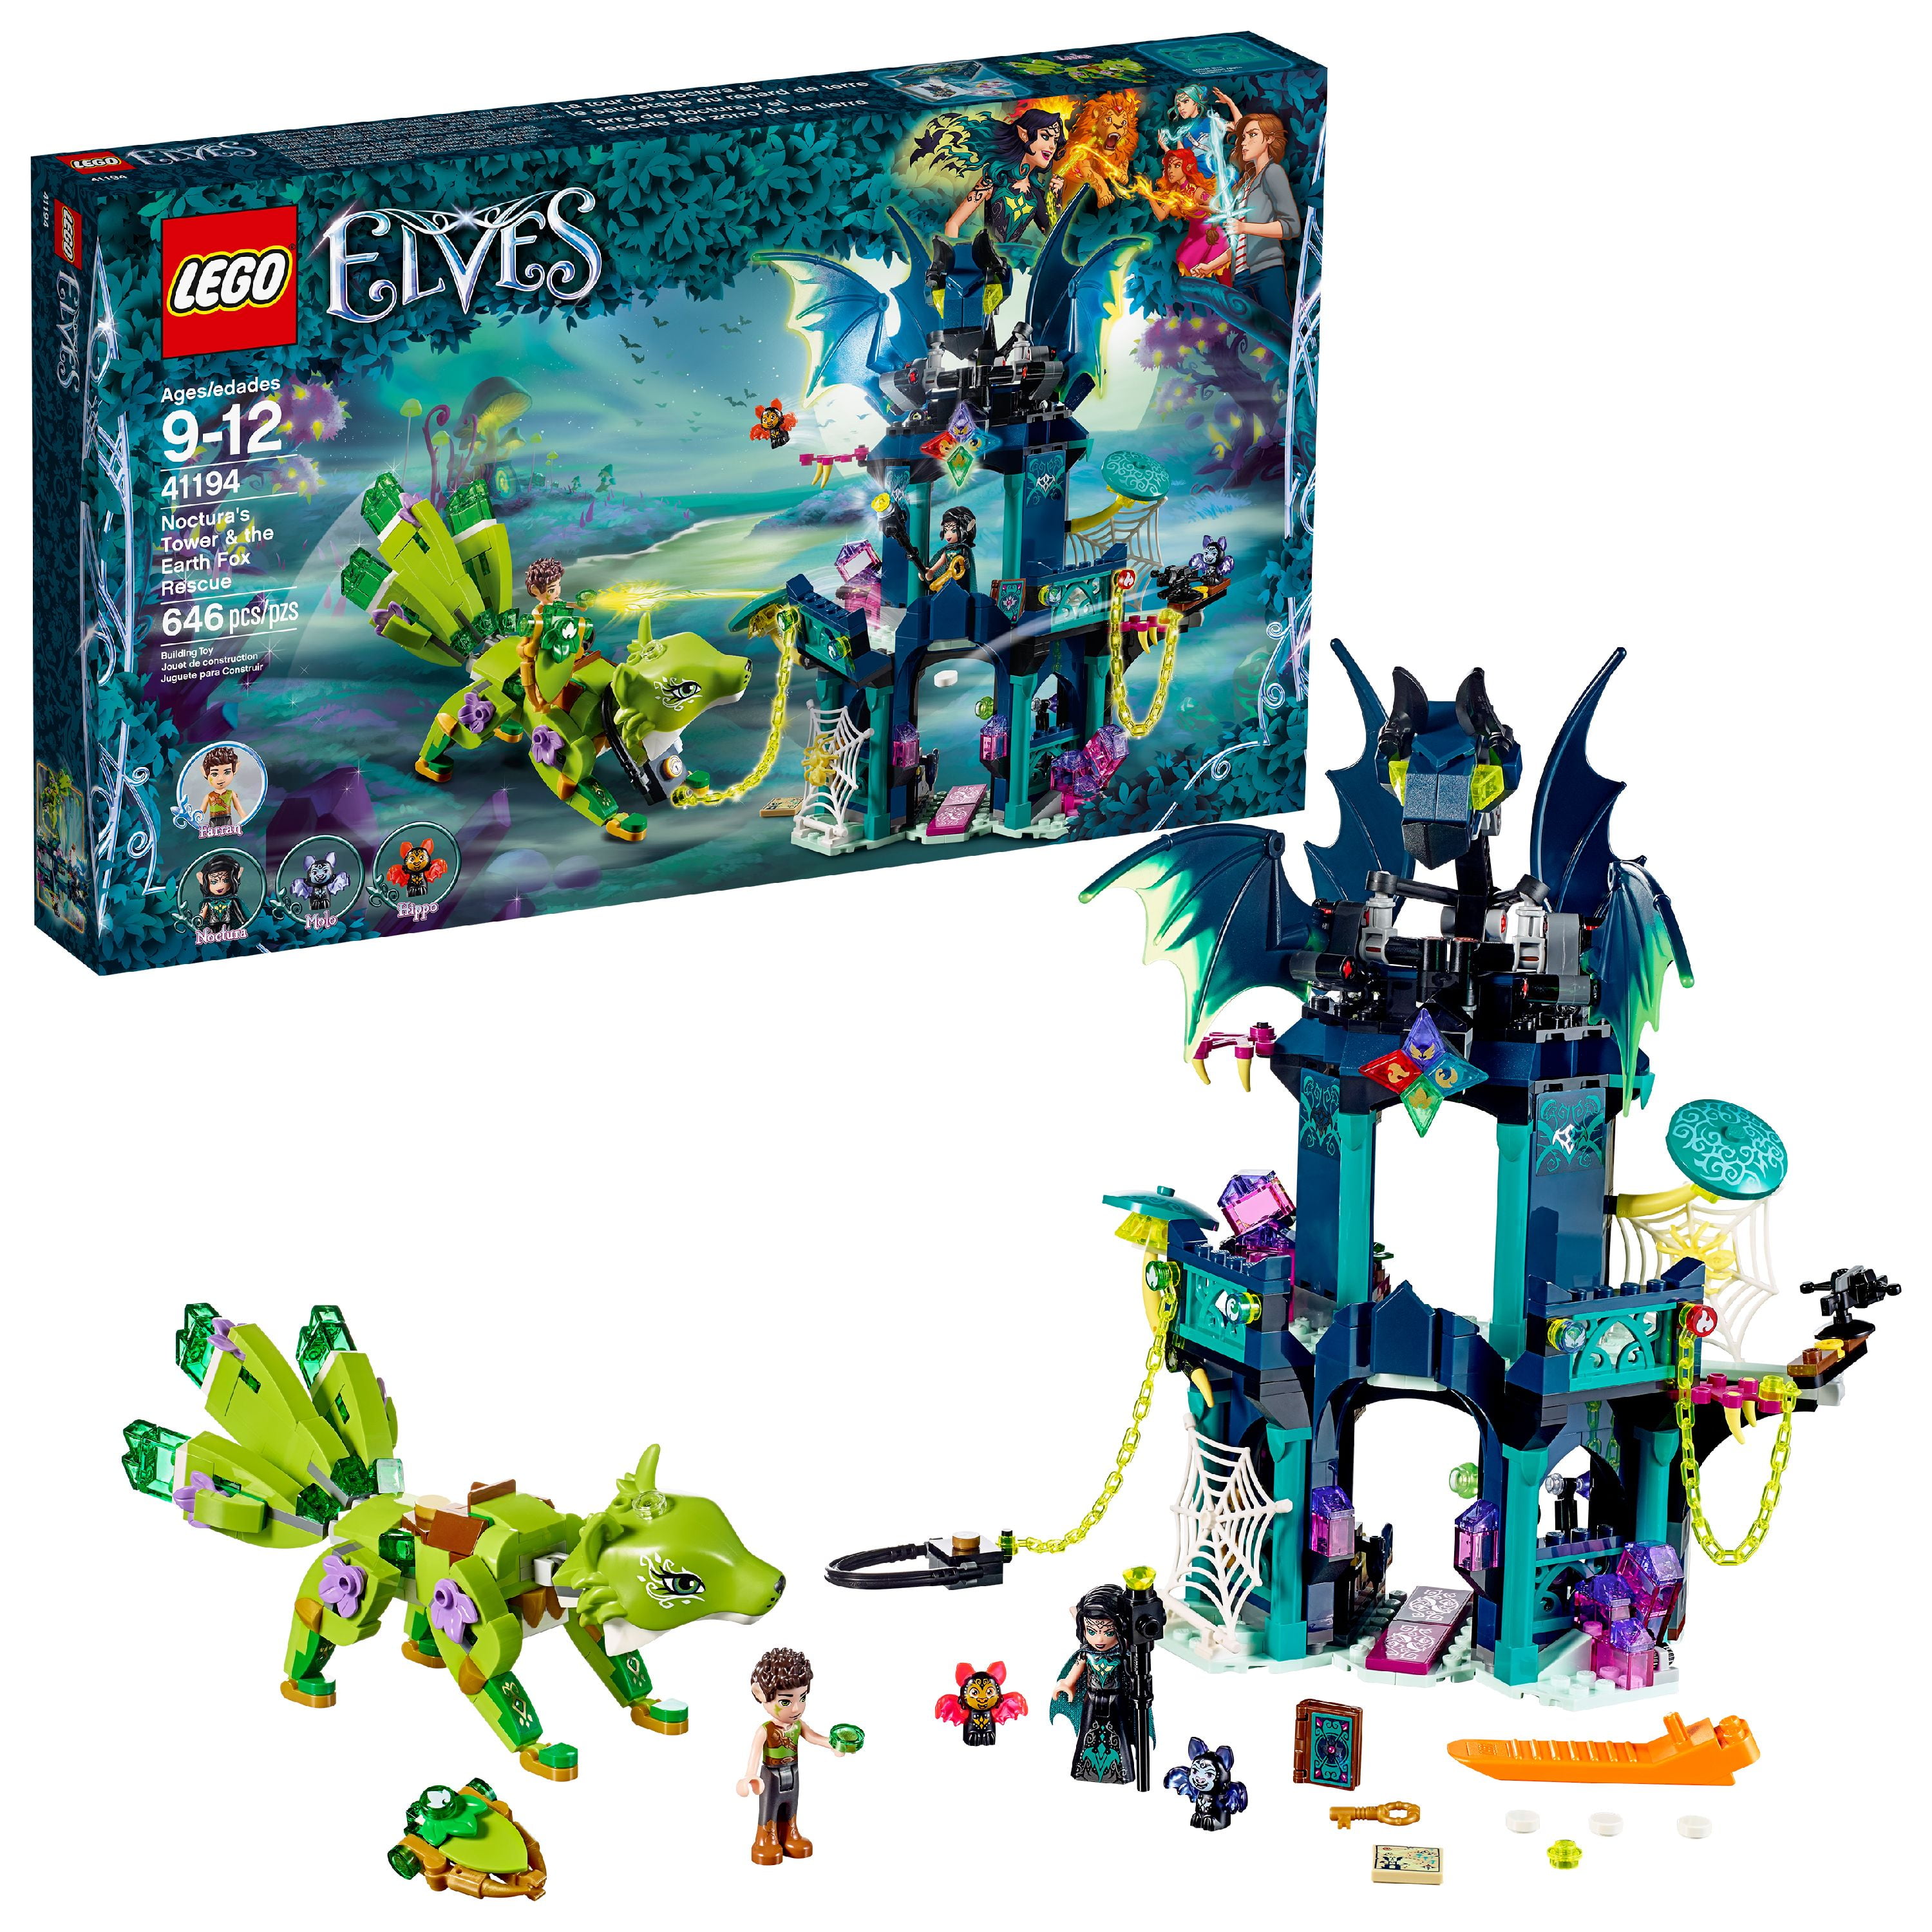 ✅Elves The Goblin King's Dragon Legoingly Building Blocks Bricks Toys kids gift 